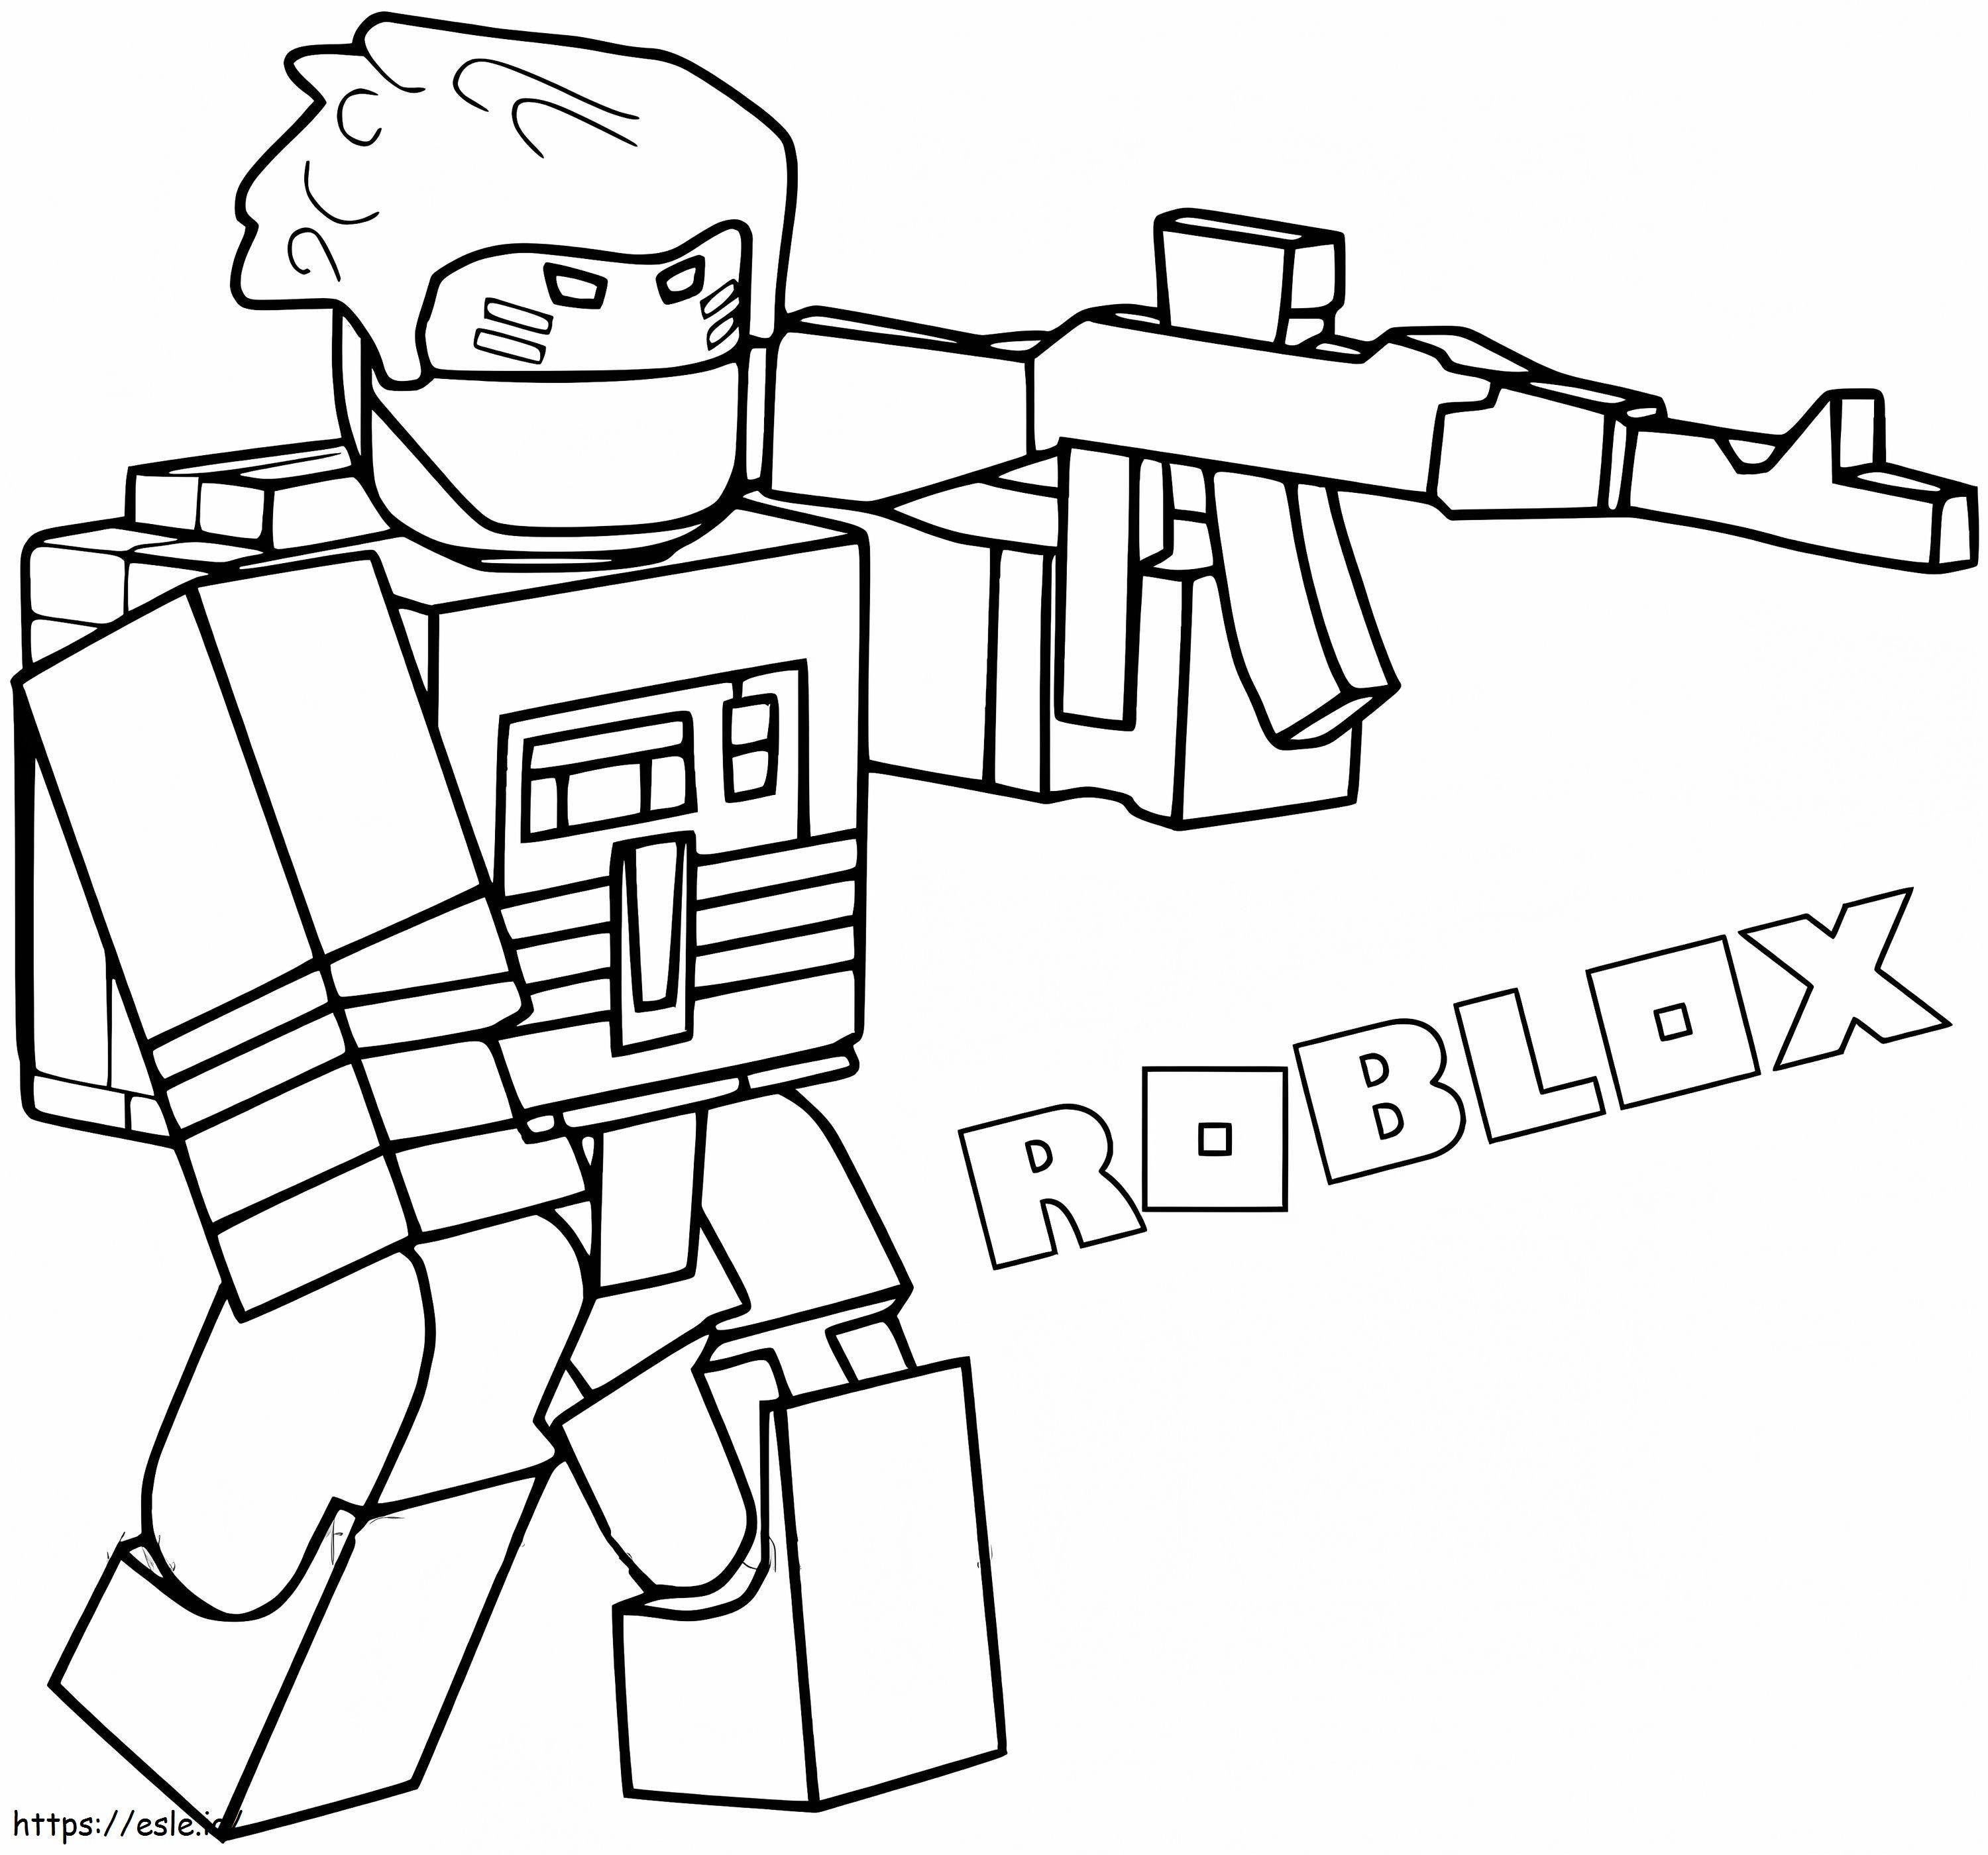 Personaj Roblox cu arma de colorat